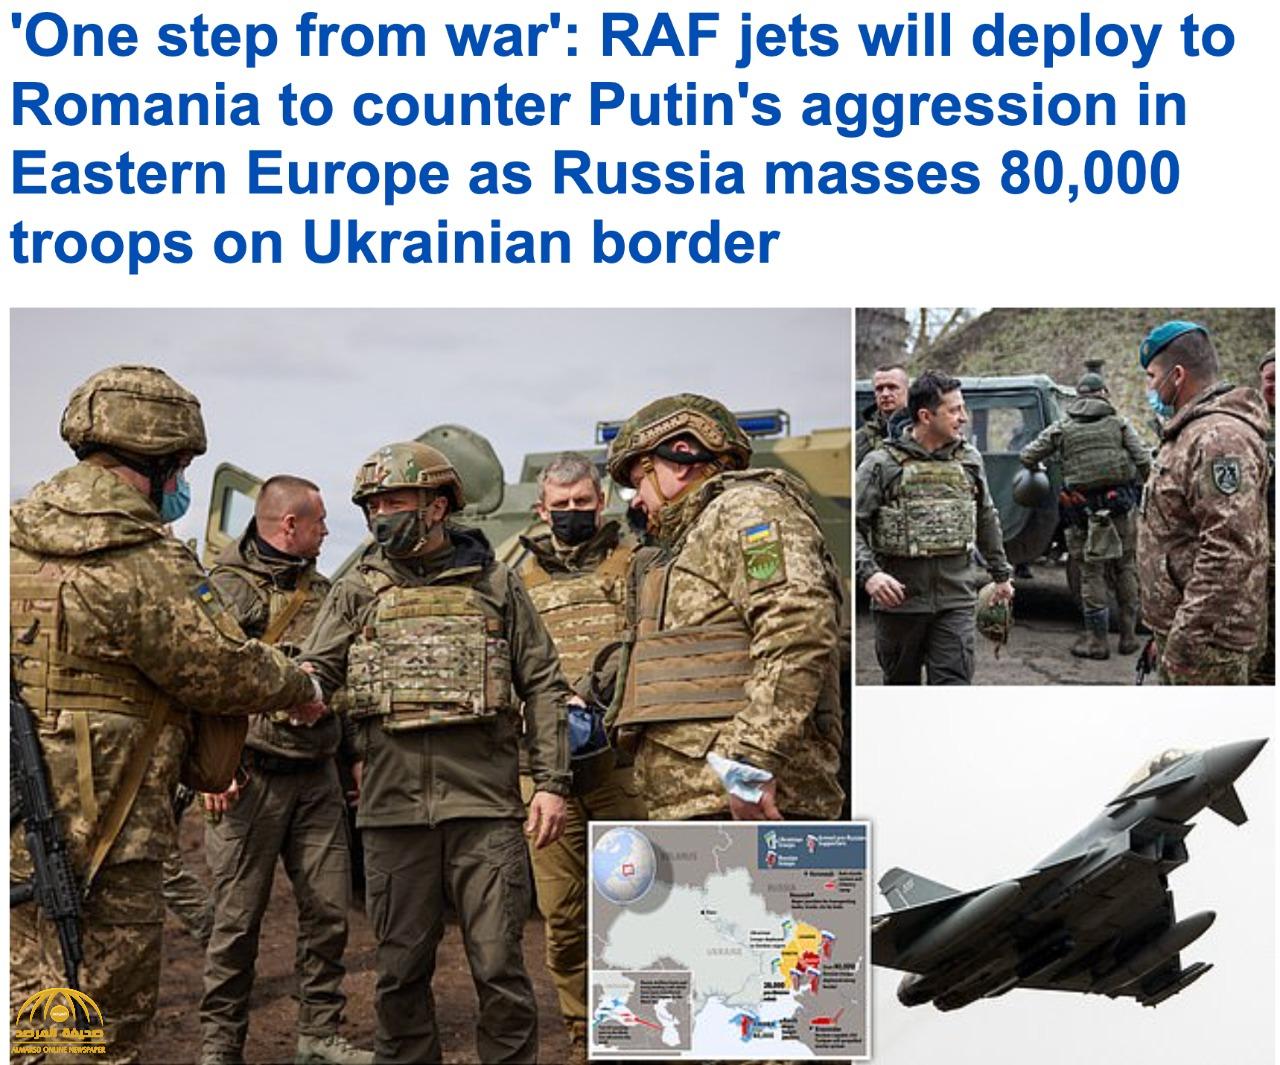 "على بعد خطوة من الحرب"... روسيا تحشد 80 ألف جندي على حدودها مع أوكرانيا -صور وفيديو